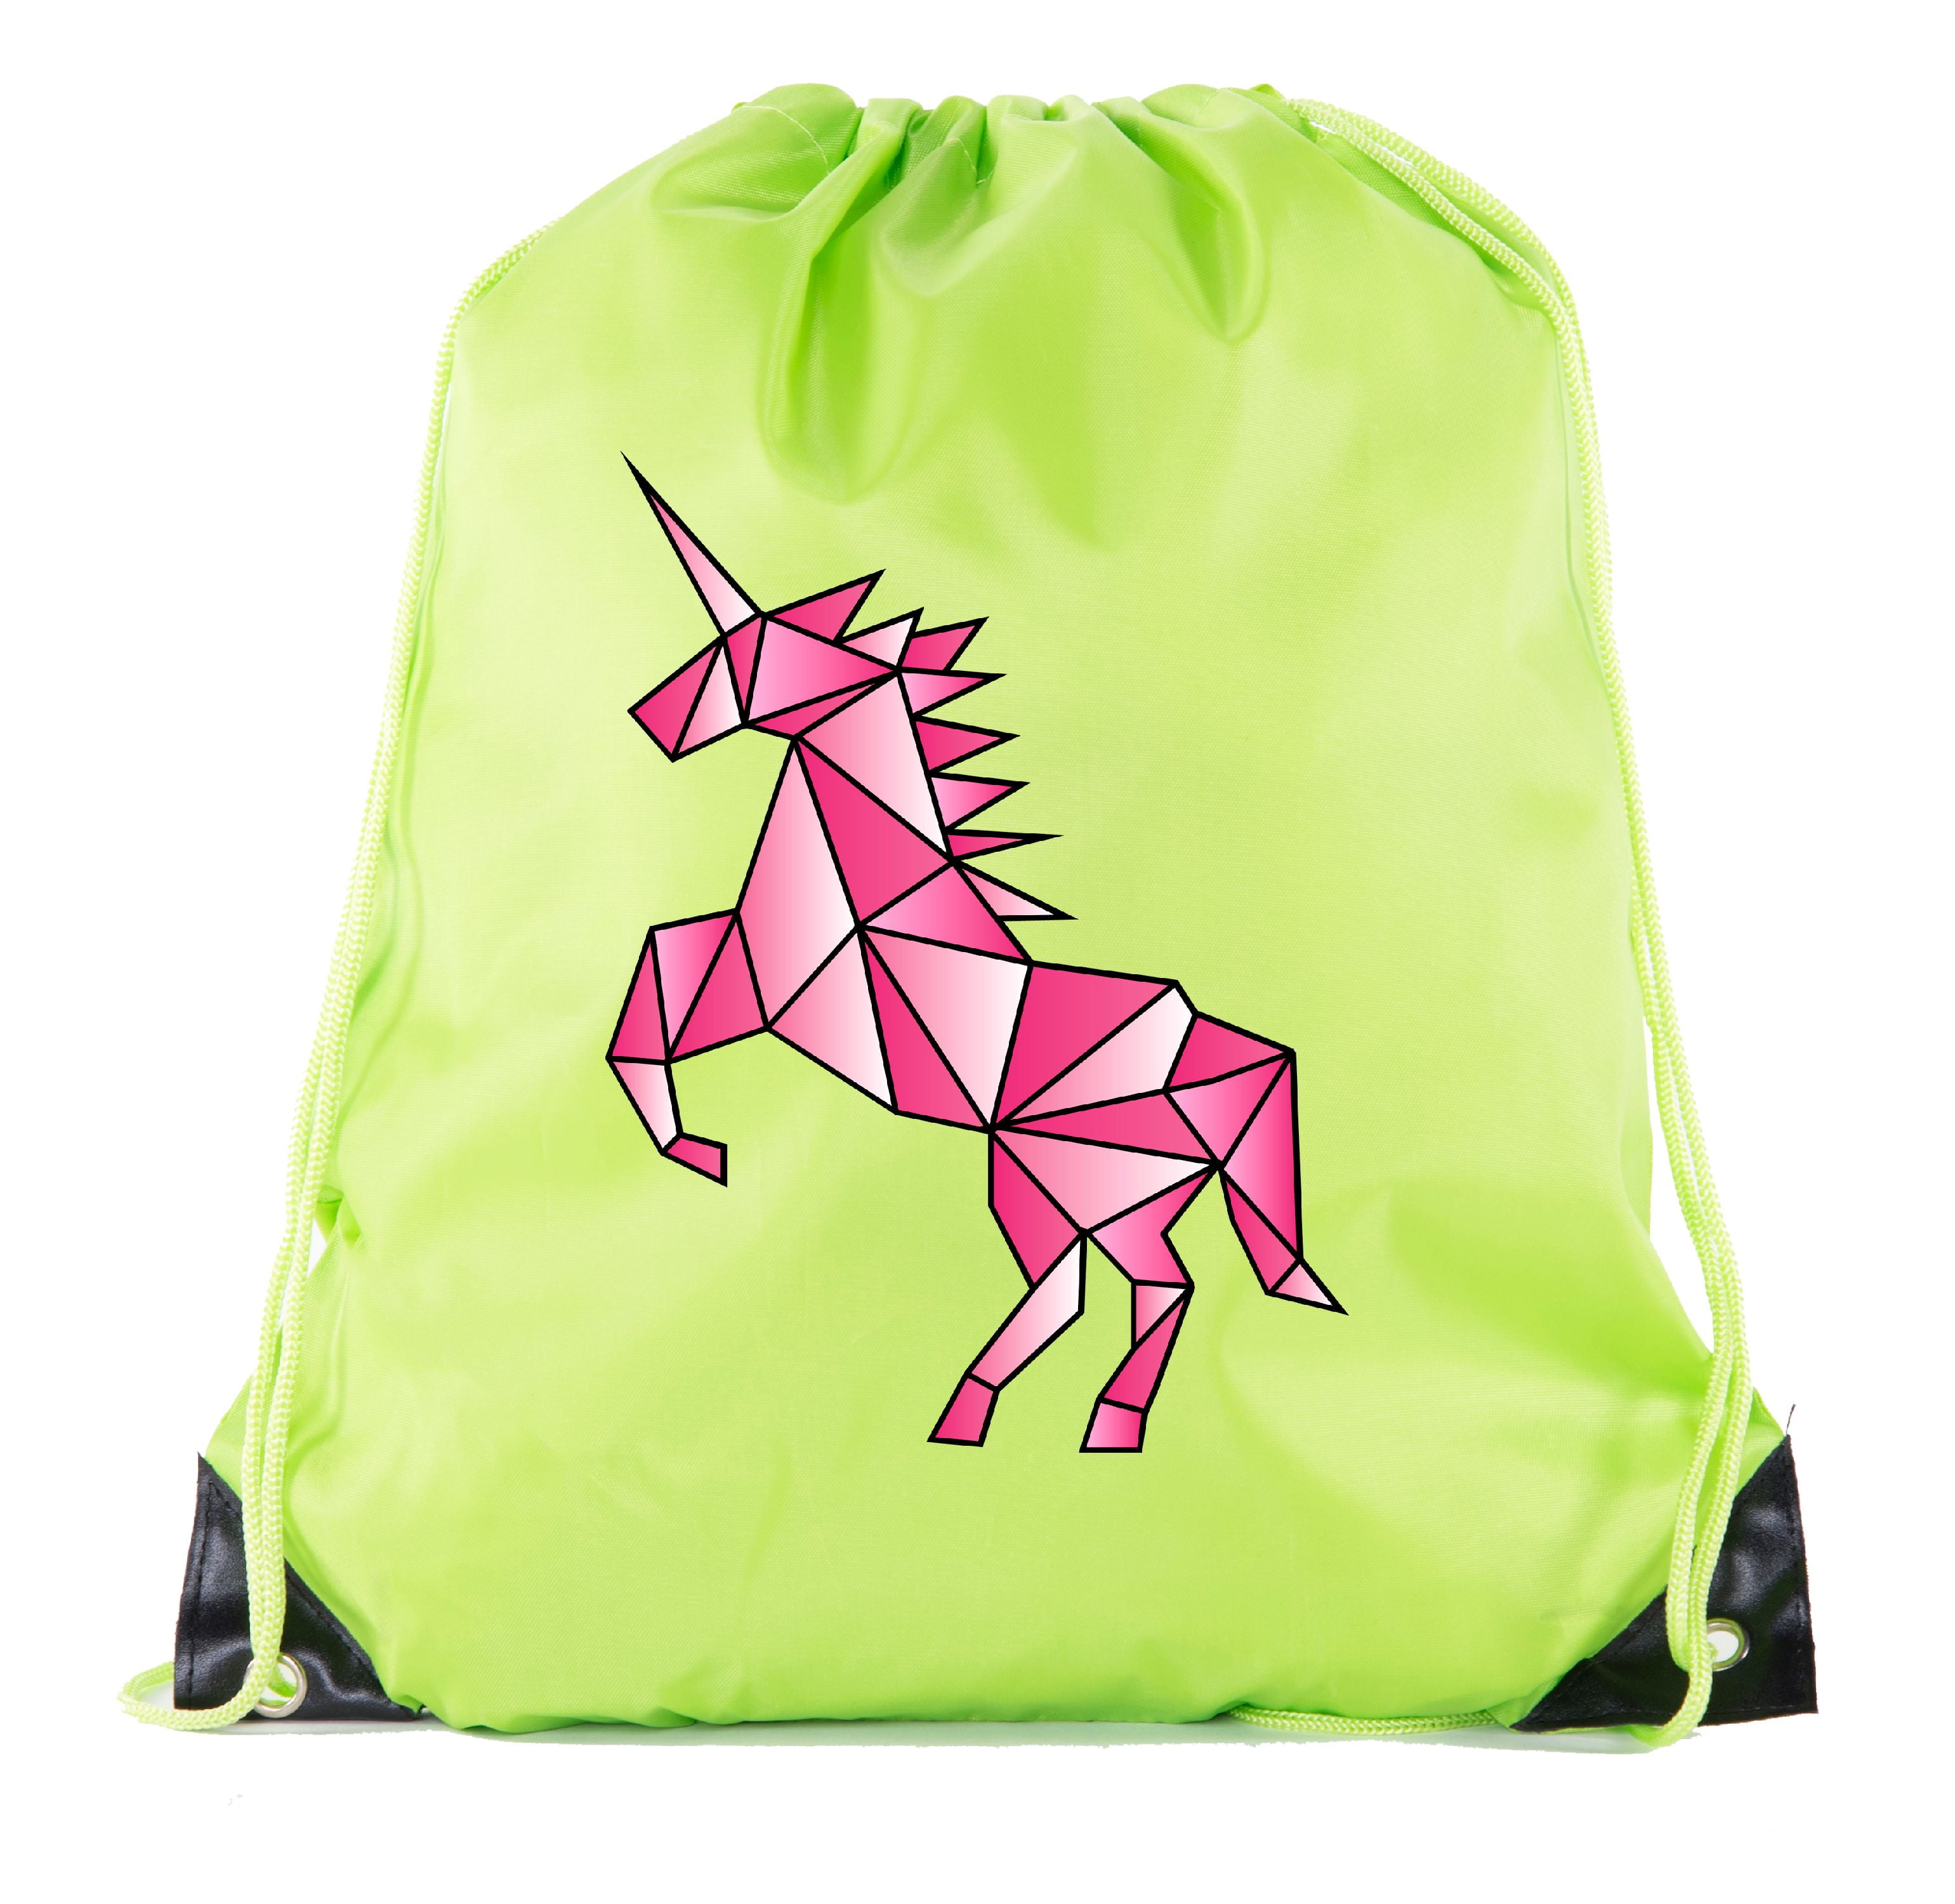 H01 Djryj Notable Unicornio Cartoon Bolsa Translúcido Estudiante Almacenaje de Plástico Bolsa Portadocumentos Estuche